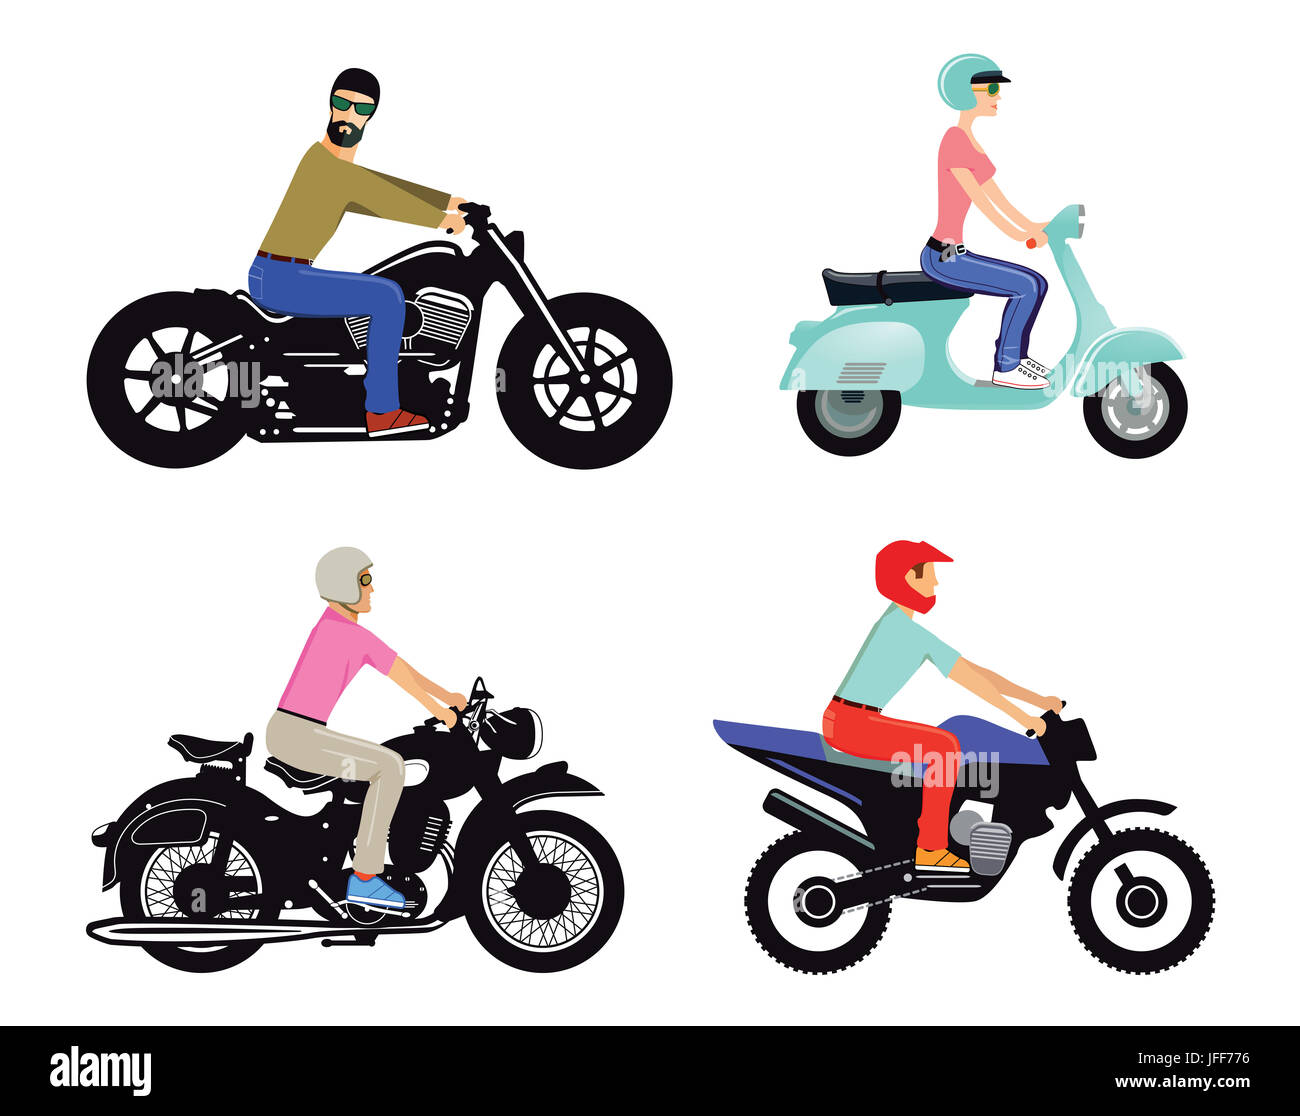 Motocyclistes sur différents types et modèles Banque D'Images